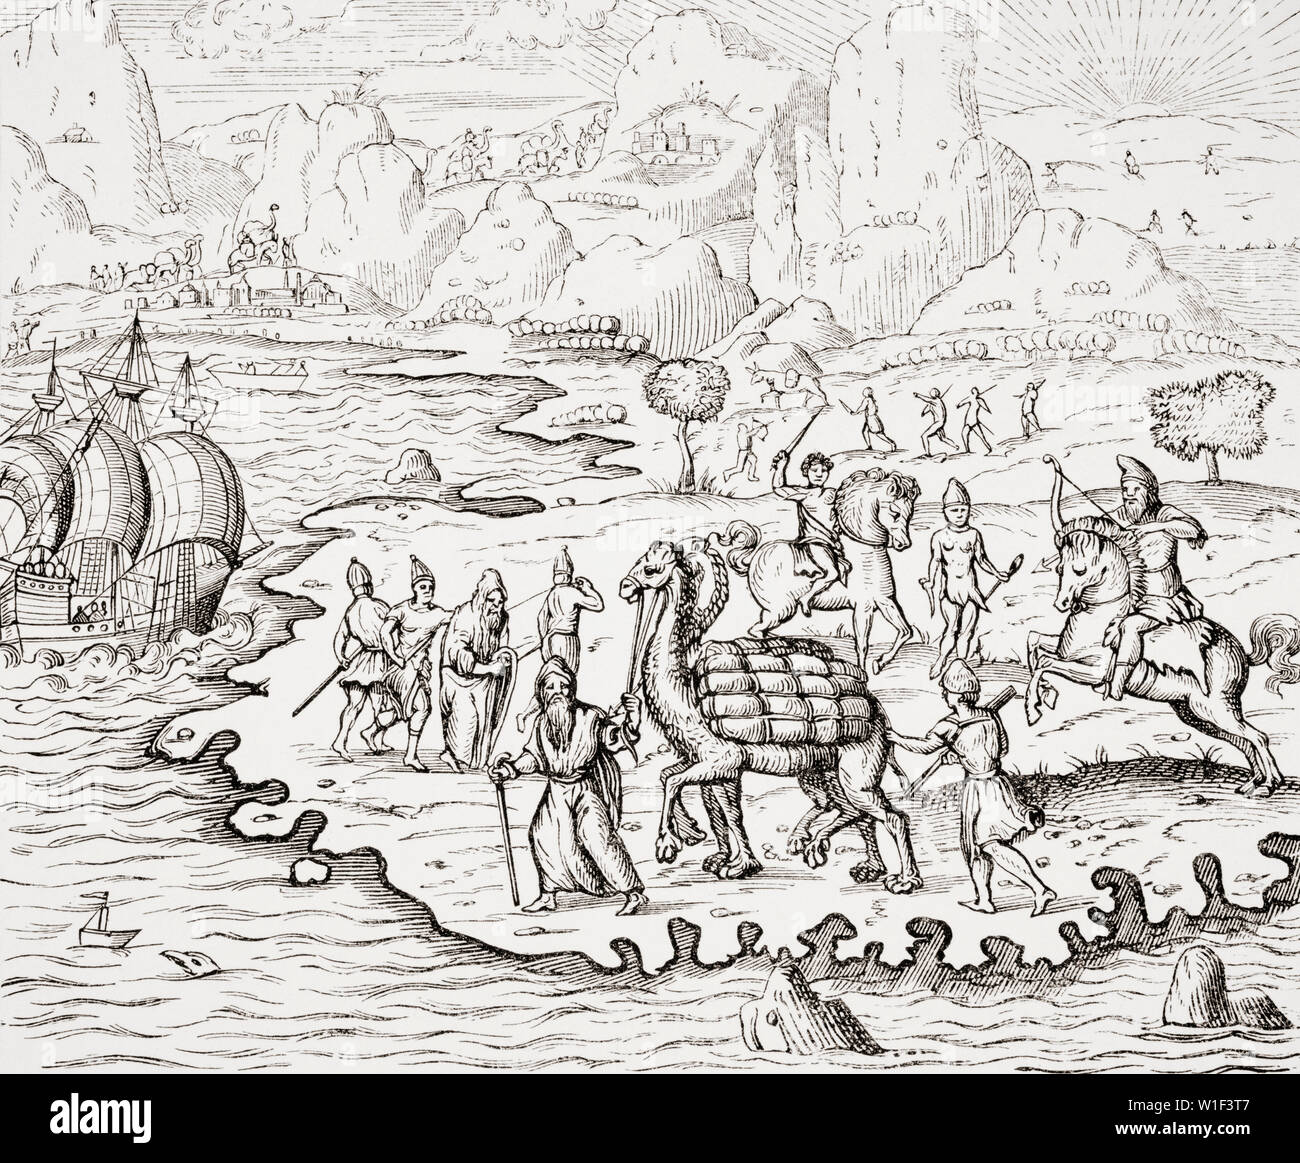 Transporte de Mercancías a lomos de los camellos. Reproducción del siglo XIX de una xilografía en la Cosmographie Universelle de Thevet edición de 1575 Foto de stock